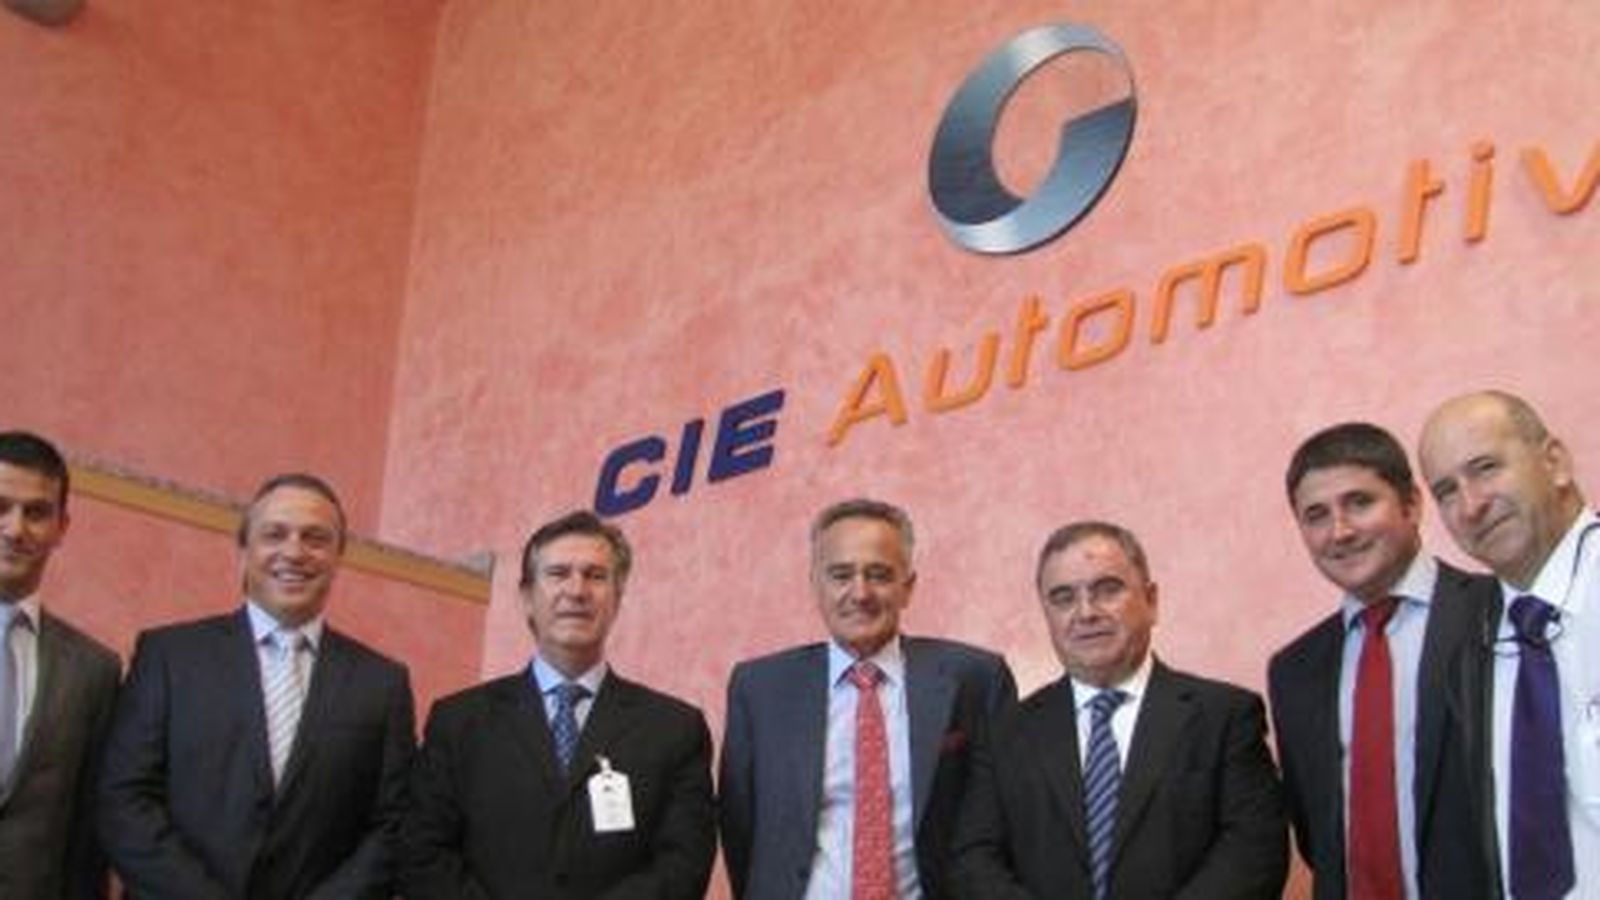 Foto: Miembros de Cie Automotive